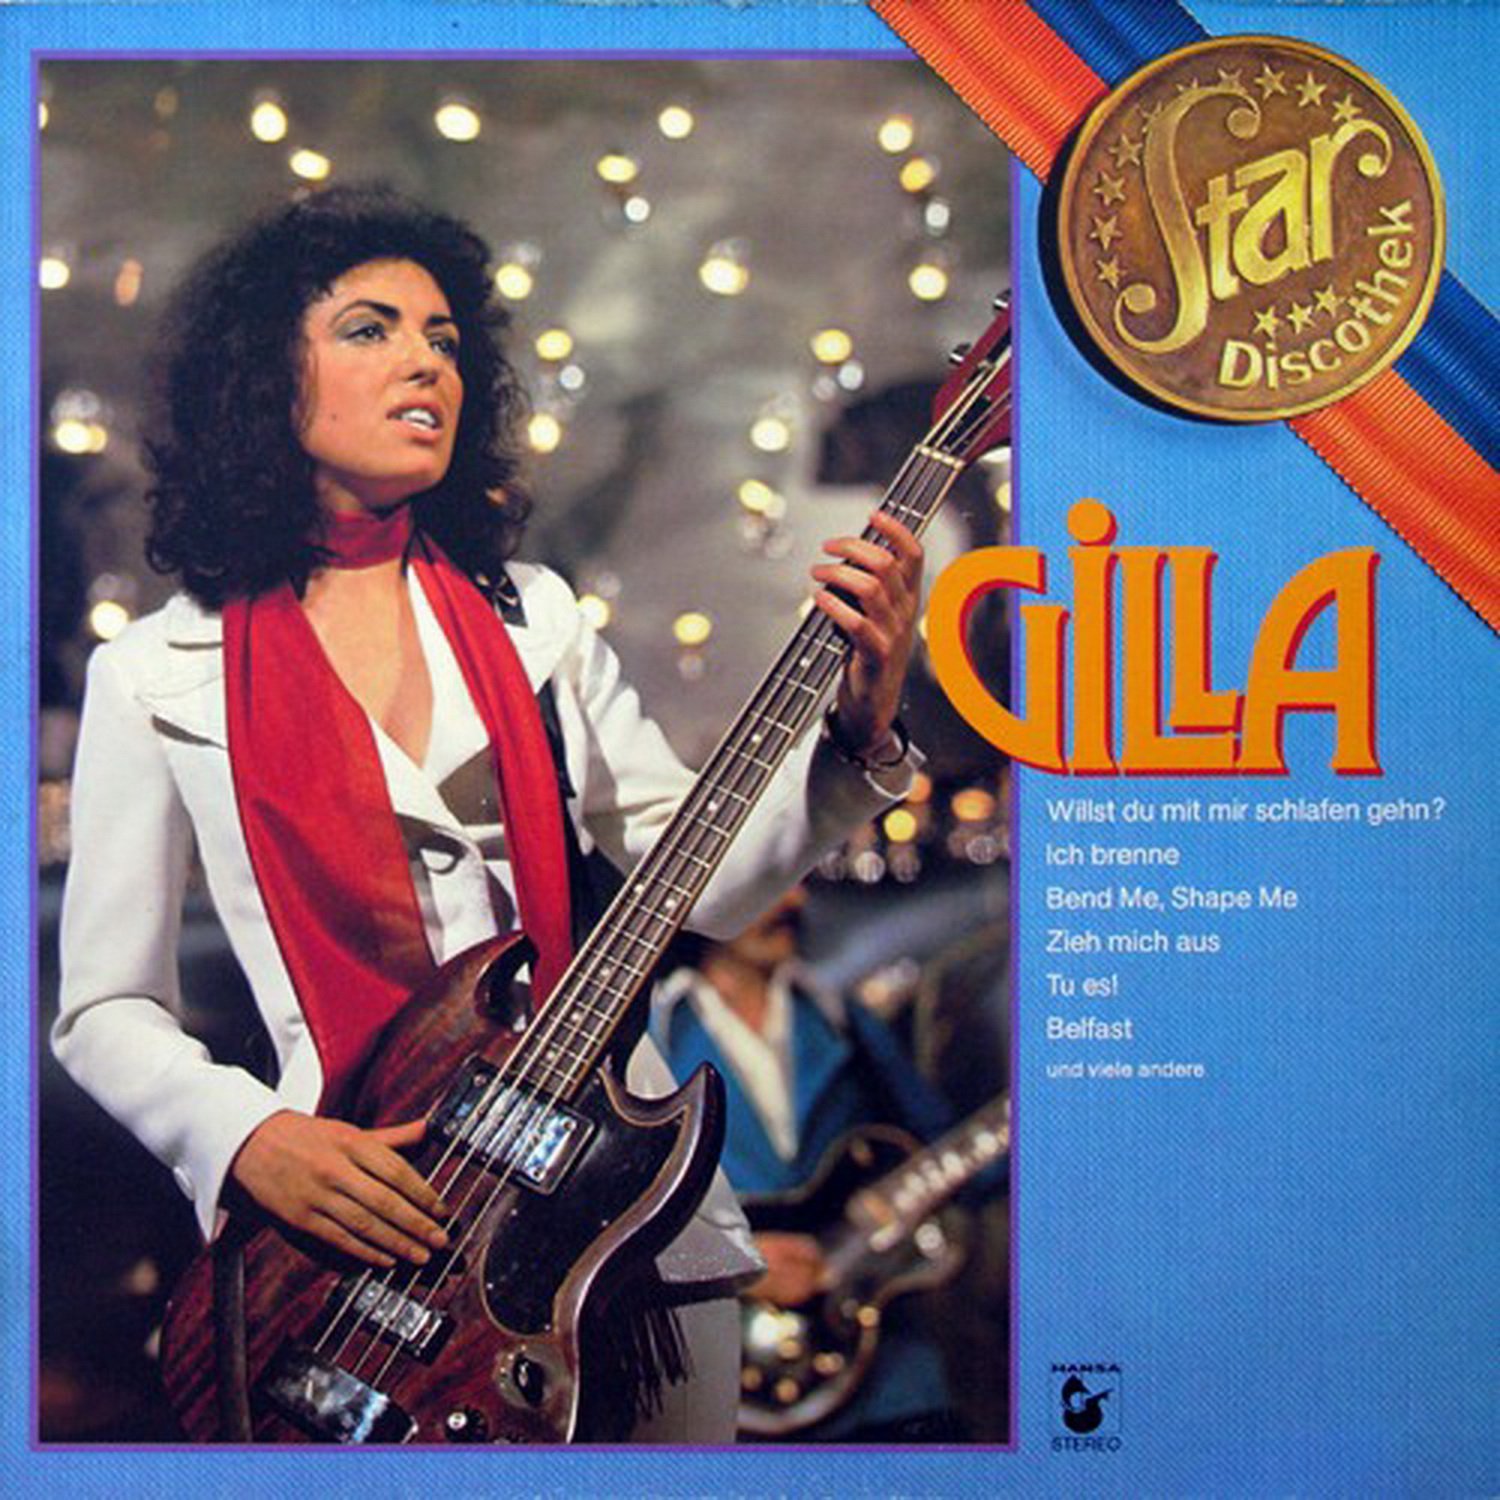 Gilla слушать. Gilla певица. Гилла Австрийская певица. Gilla Johnny обложка альбома. Gilla - 1979 - Star Discothek.